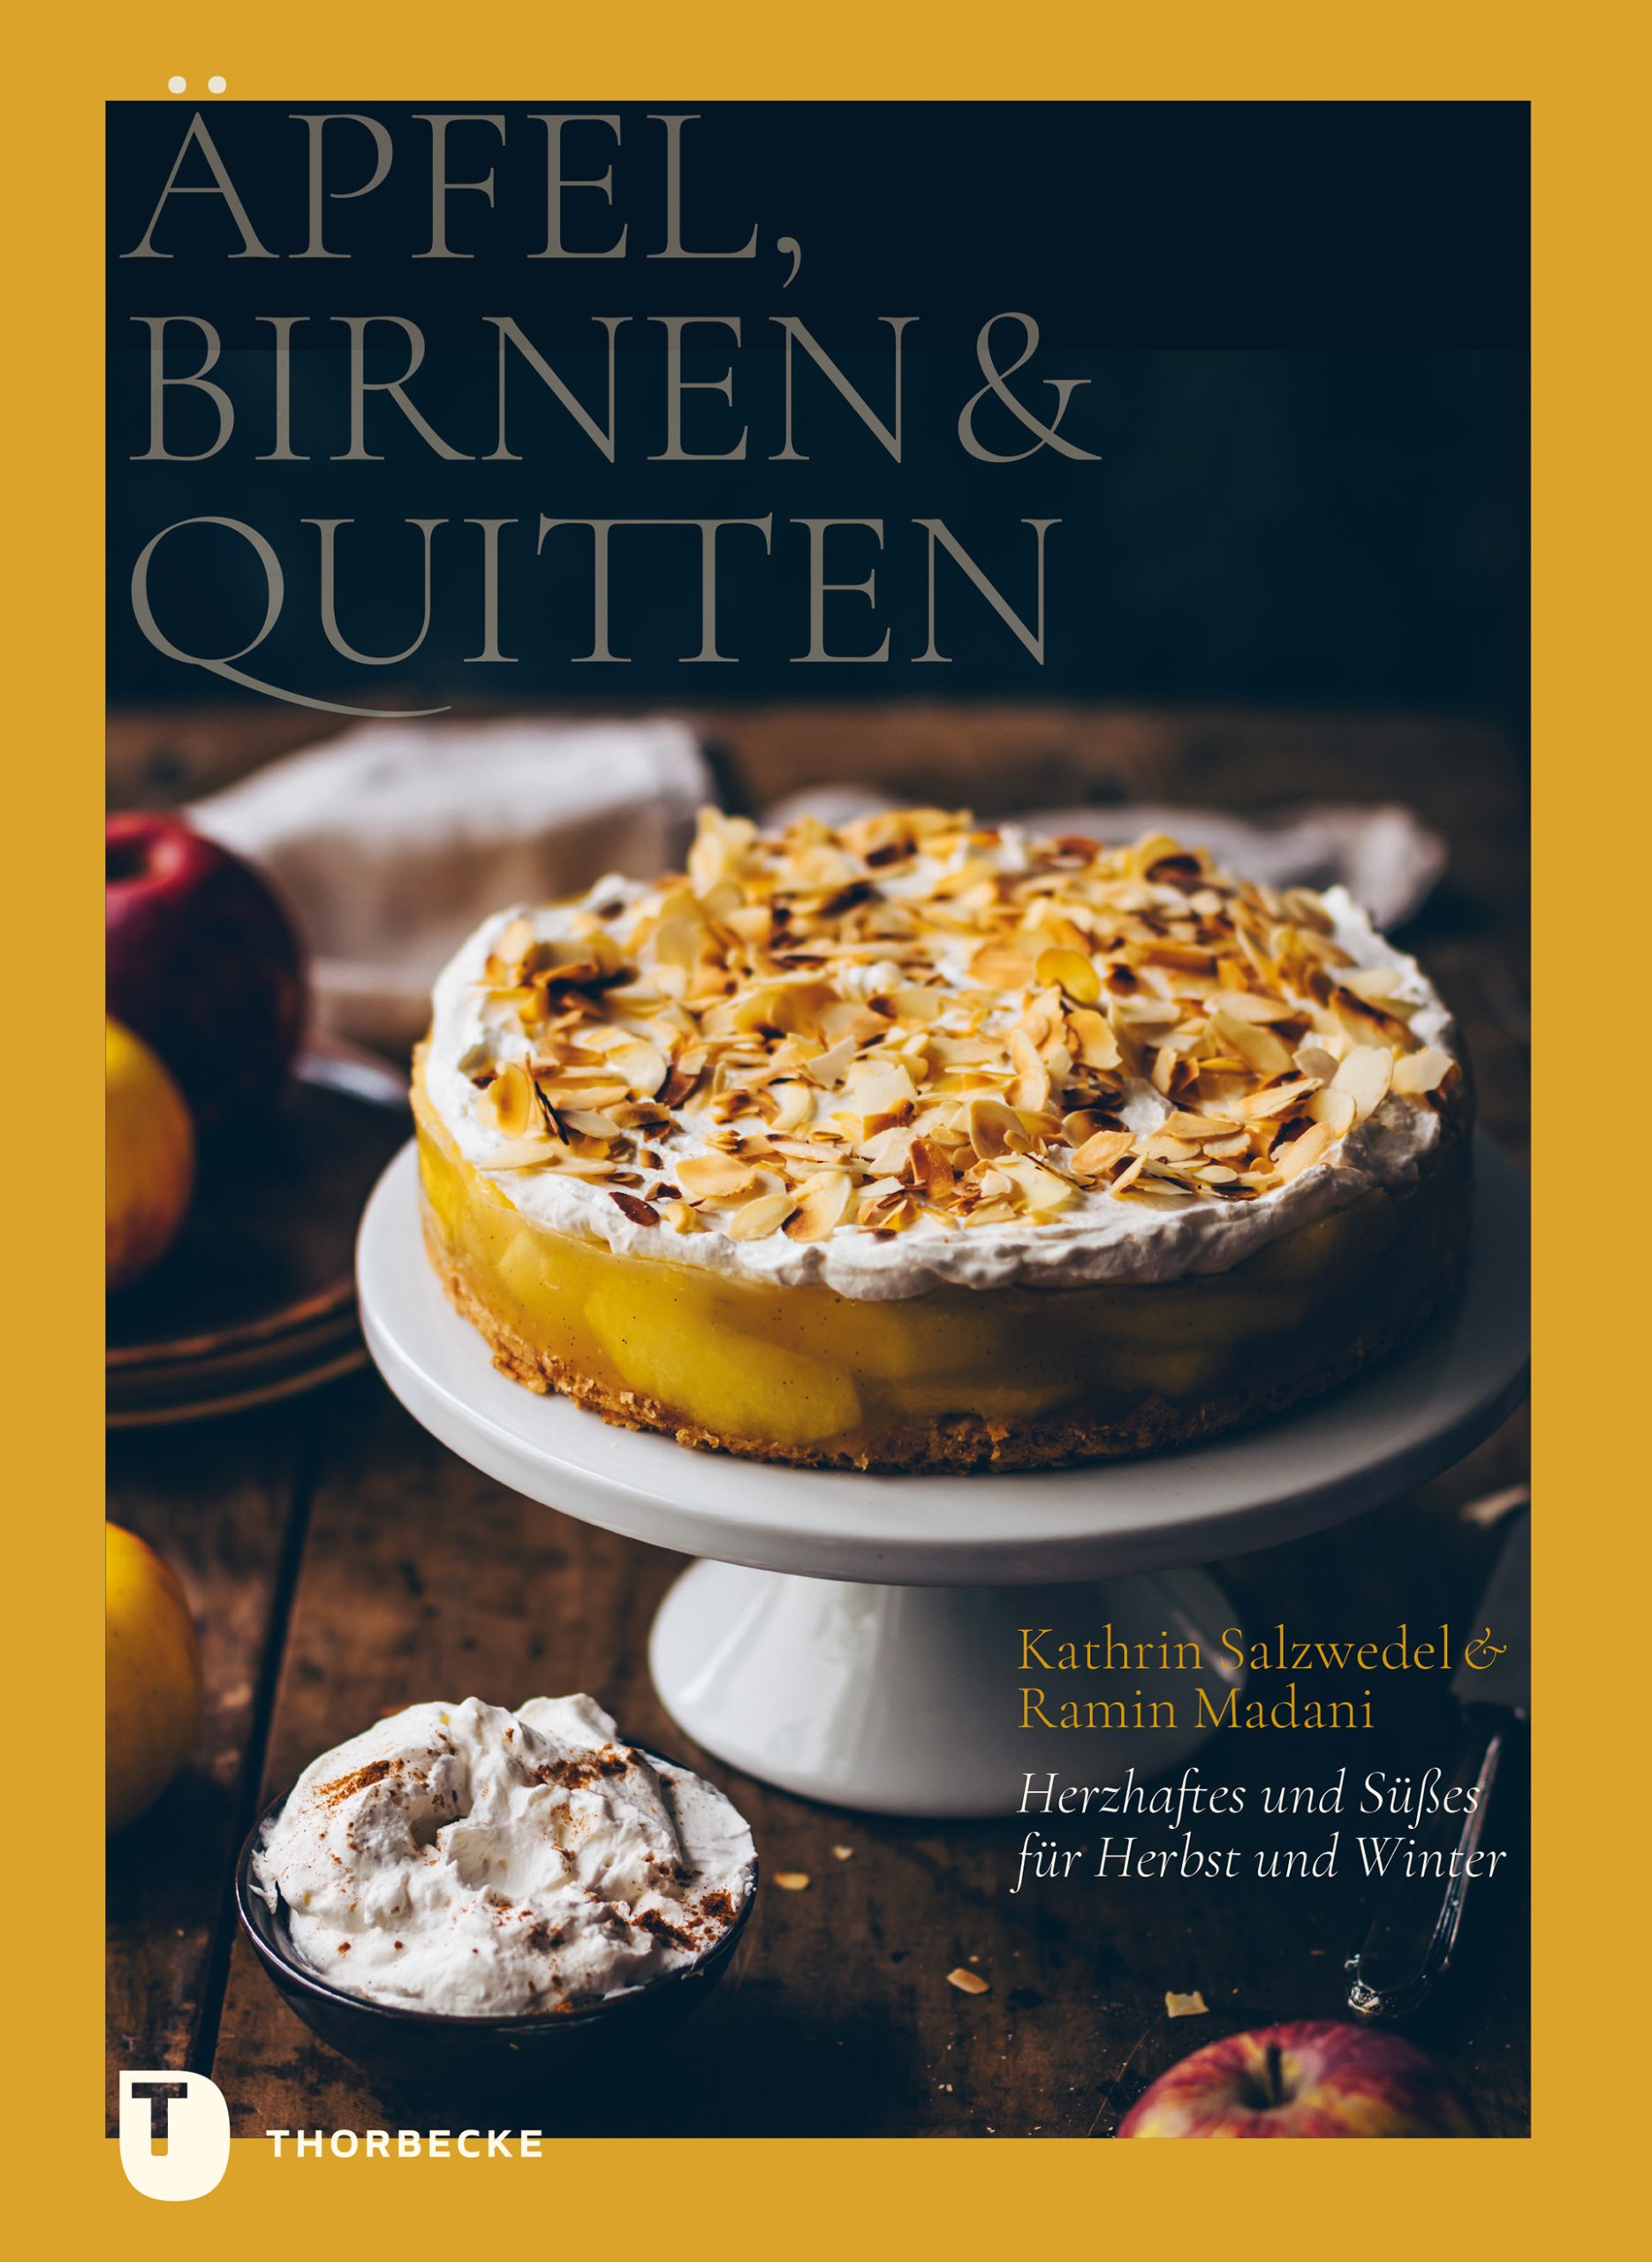 Äpfel, Birnen & Quitten: Herzhaftes und Süßes für Herbst und Winter (Cover)